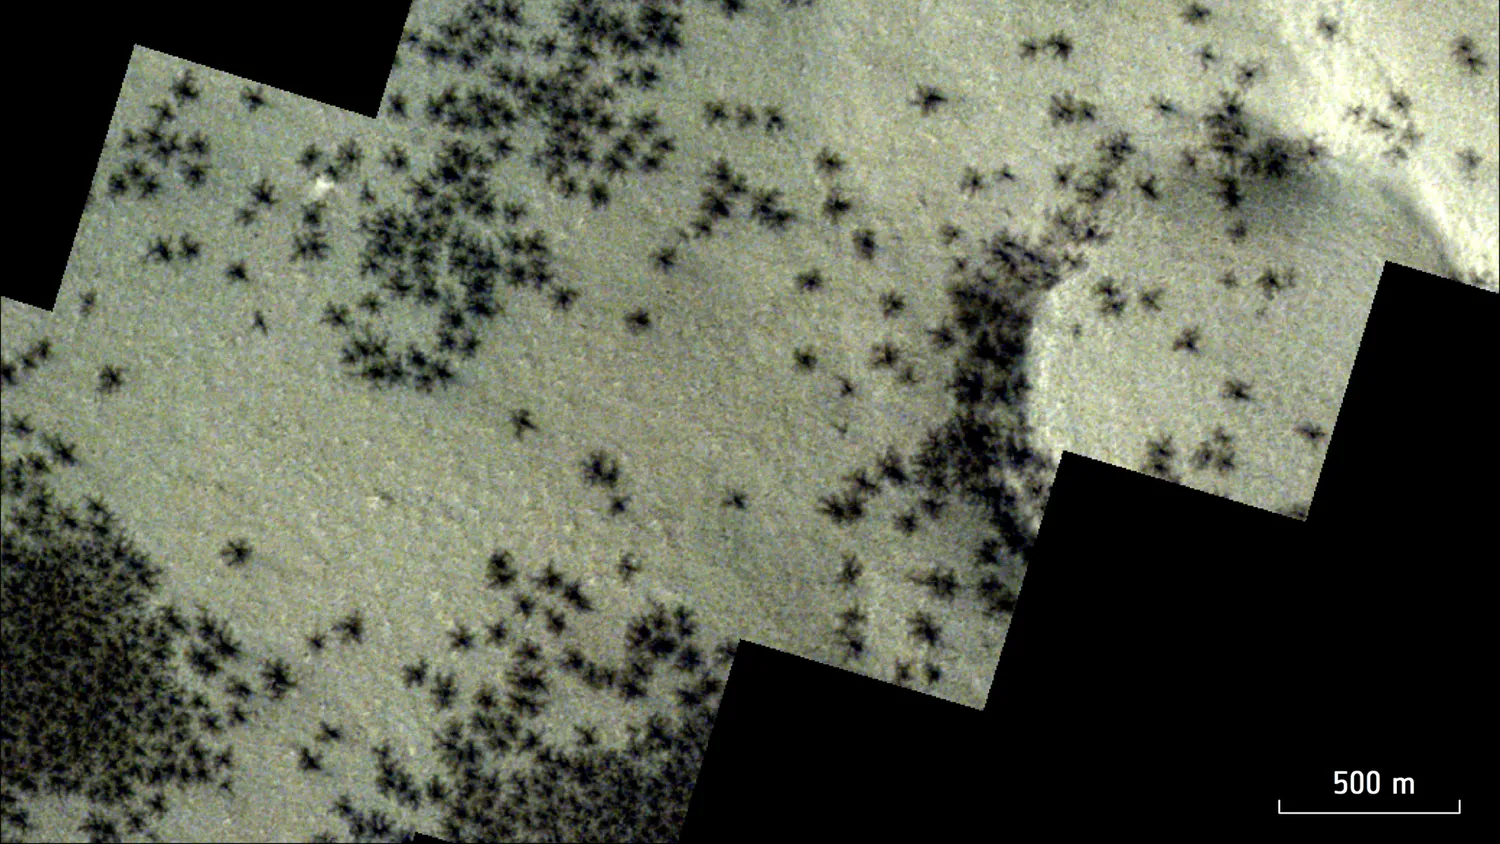 Mehr über den Artikel erfahren Satelliten entdecken Gruppen von „Spinnen“, die sich über die Inka-Stadt auf dem Mars ausbreiten (Foto)